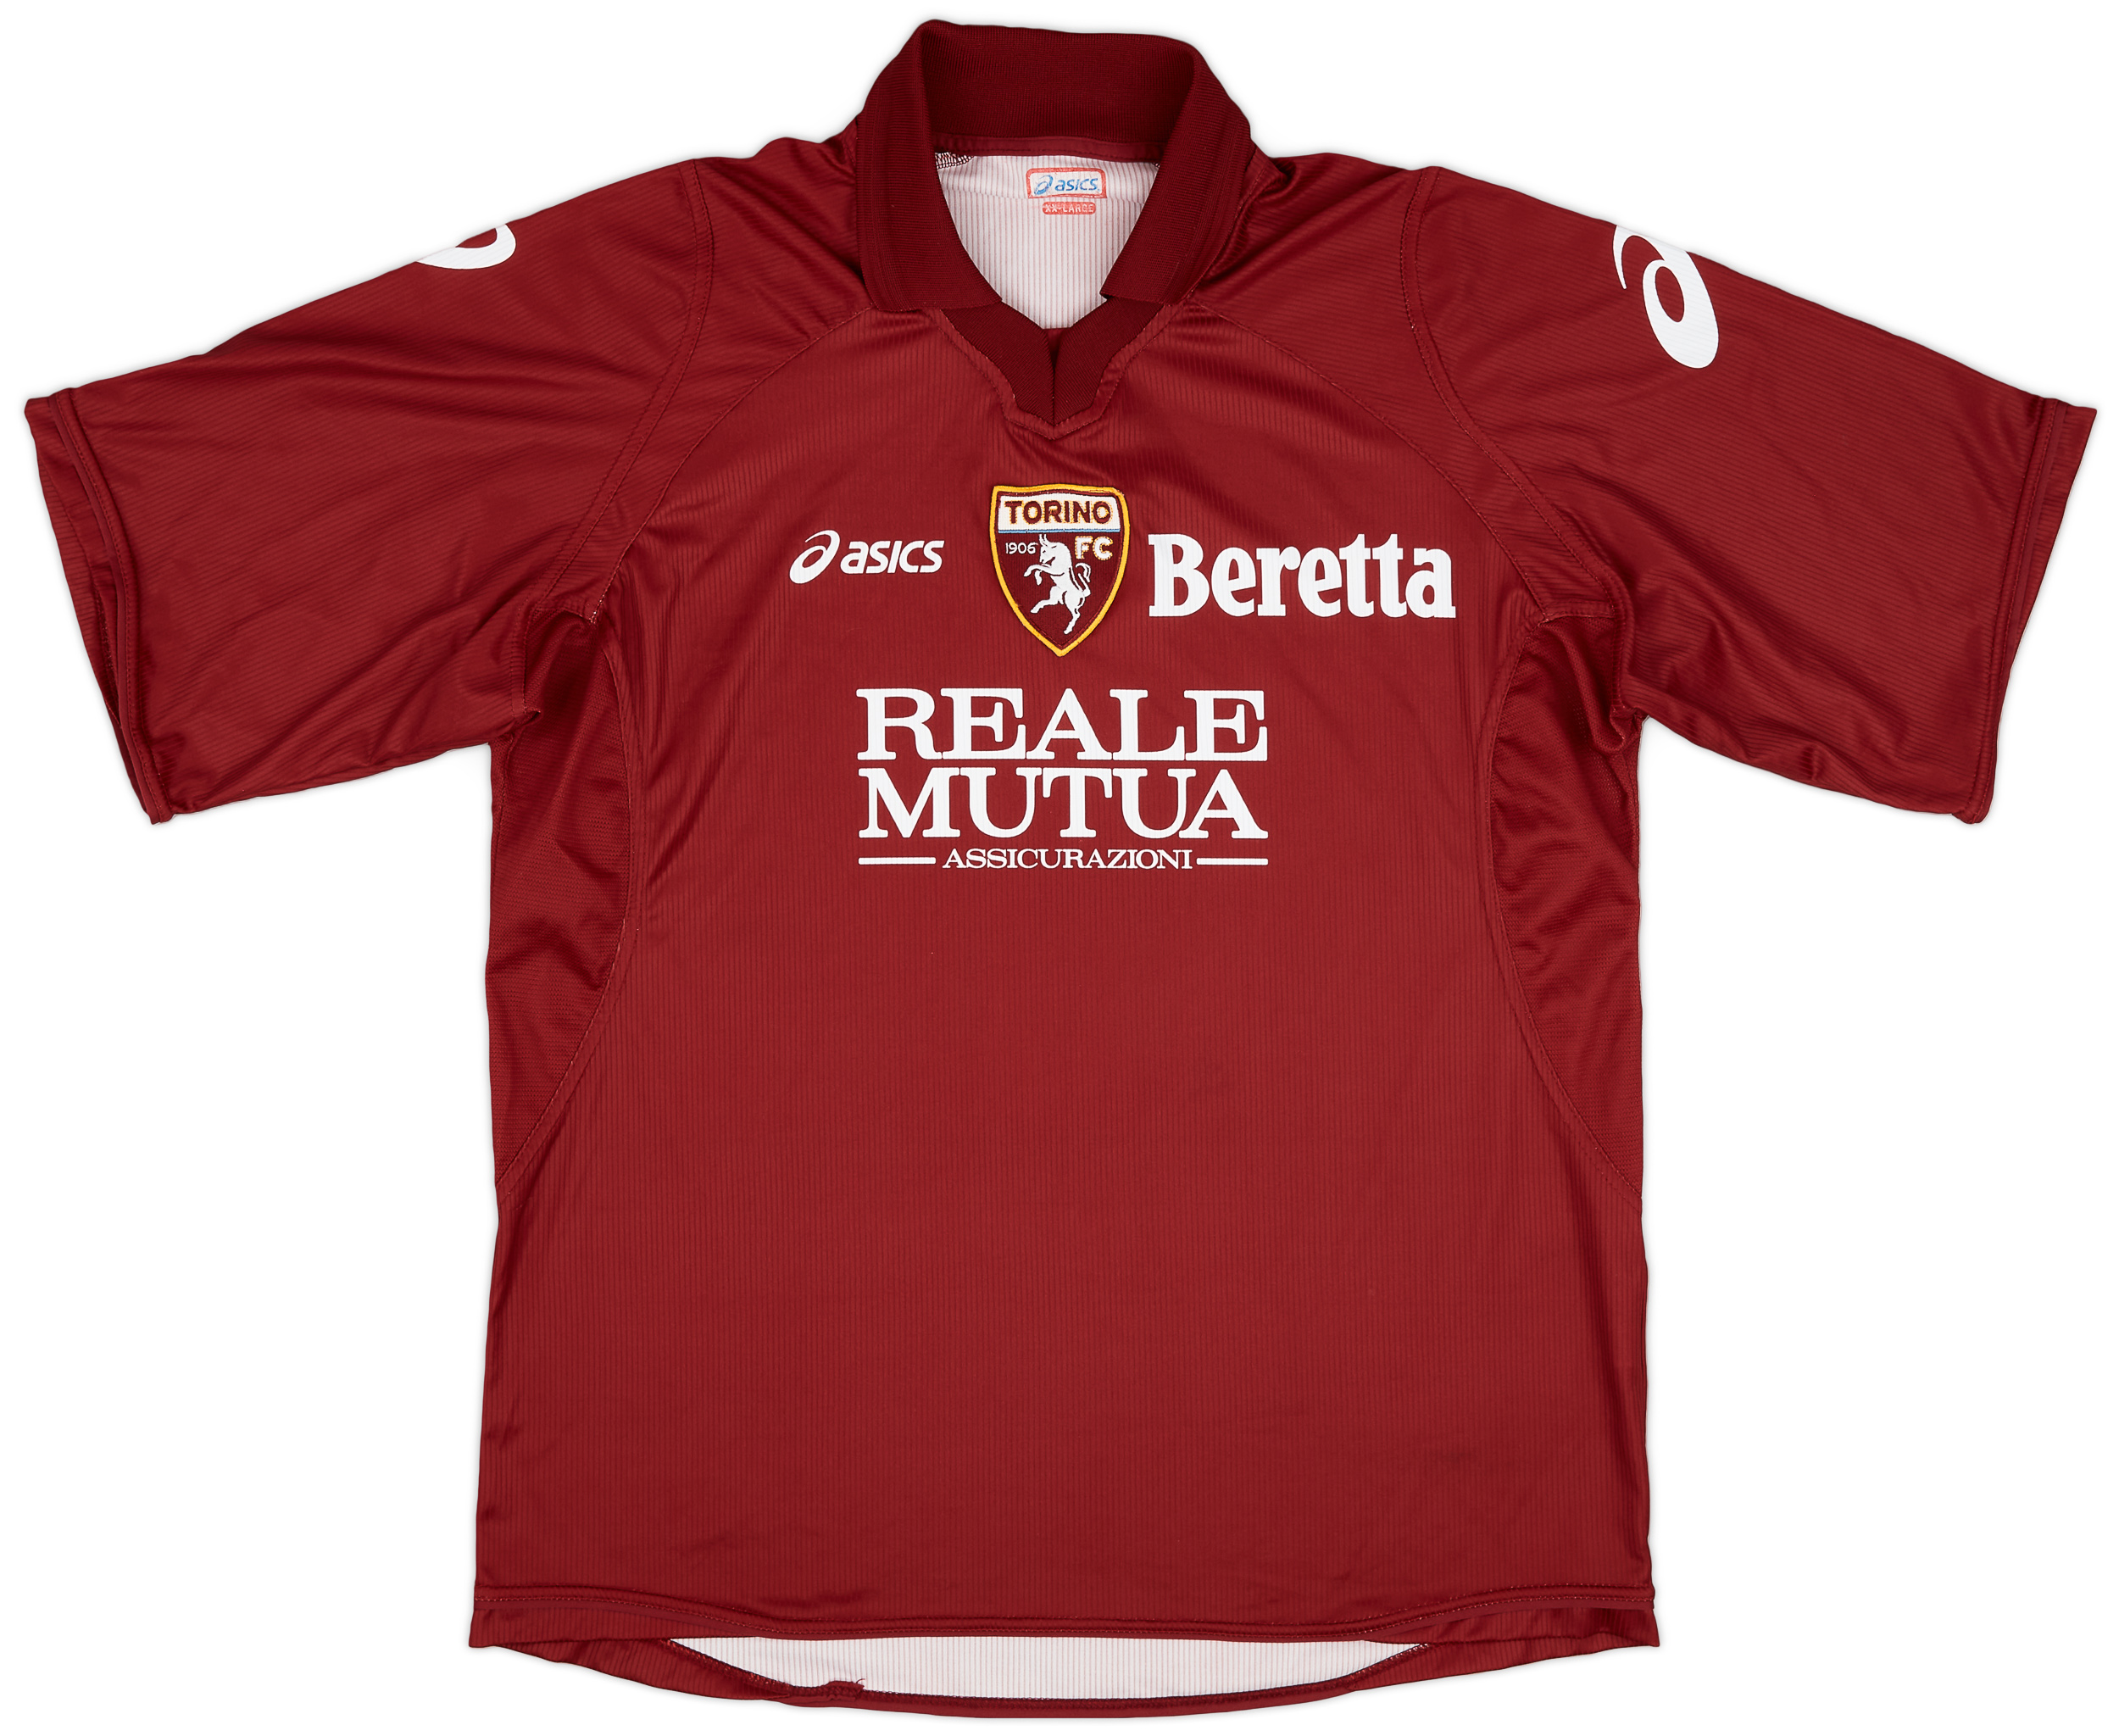 2006-07 Torino Home Shirt - 9/10 - ()